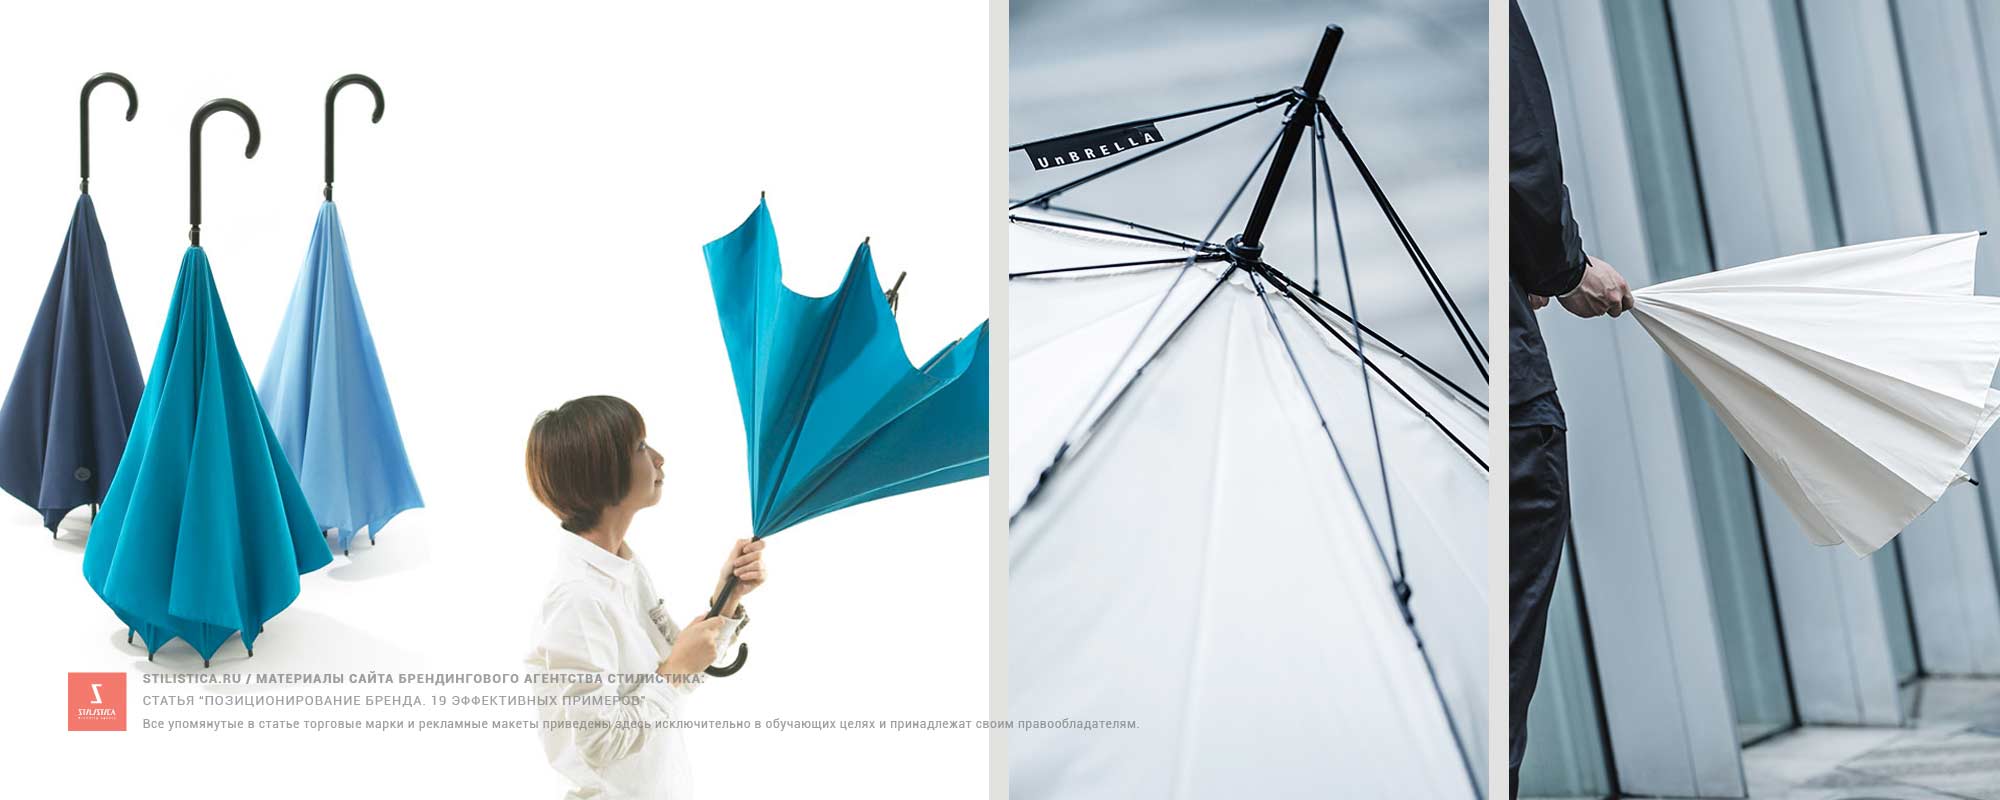 Позиционирование по применению. Зонт наоборот японского дизайнера Хироши Кадзимото